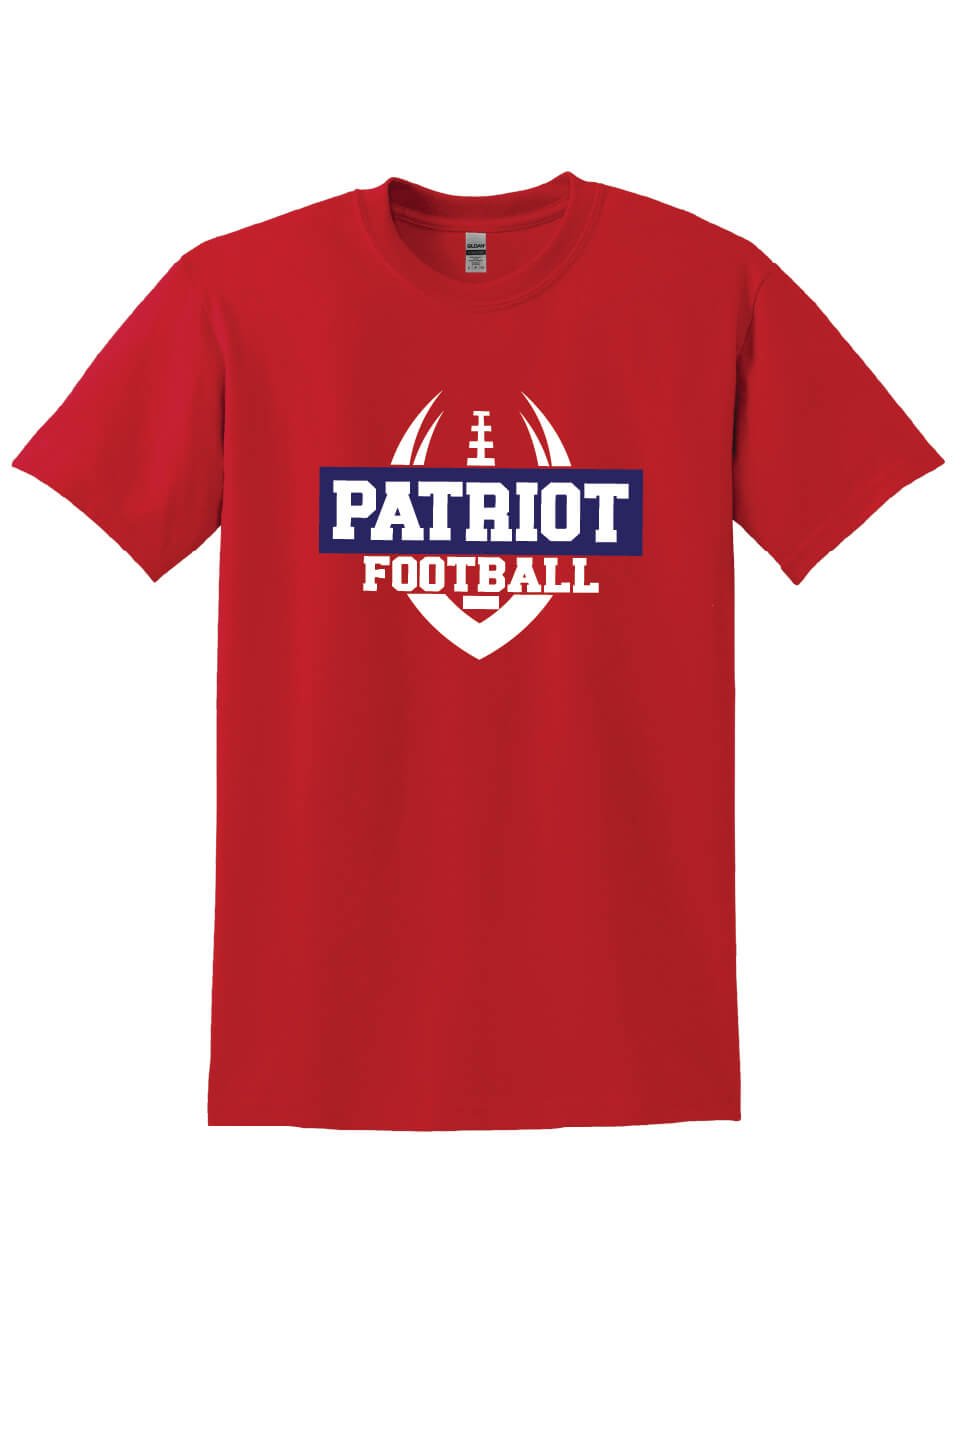 Patriot Football Short Sleeve T-shirt red